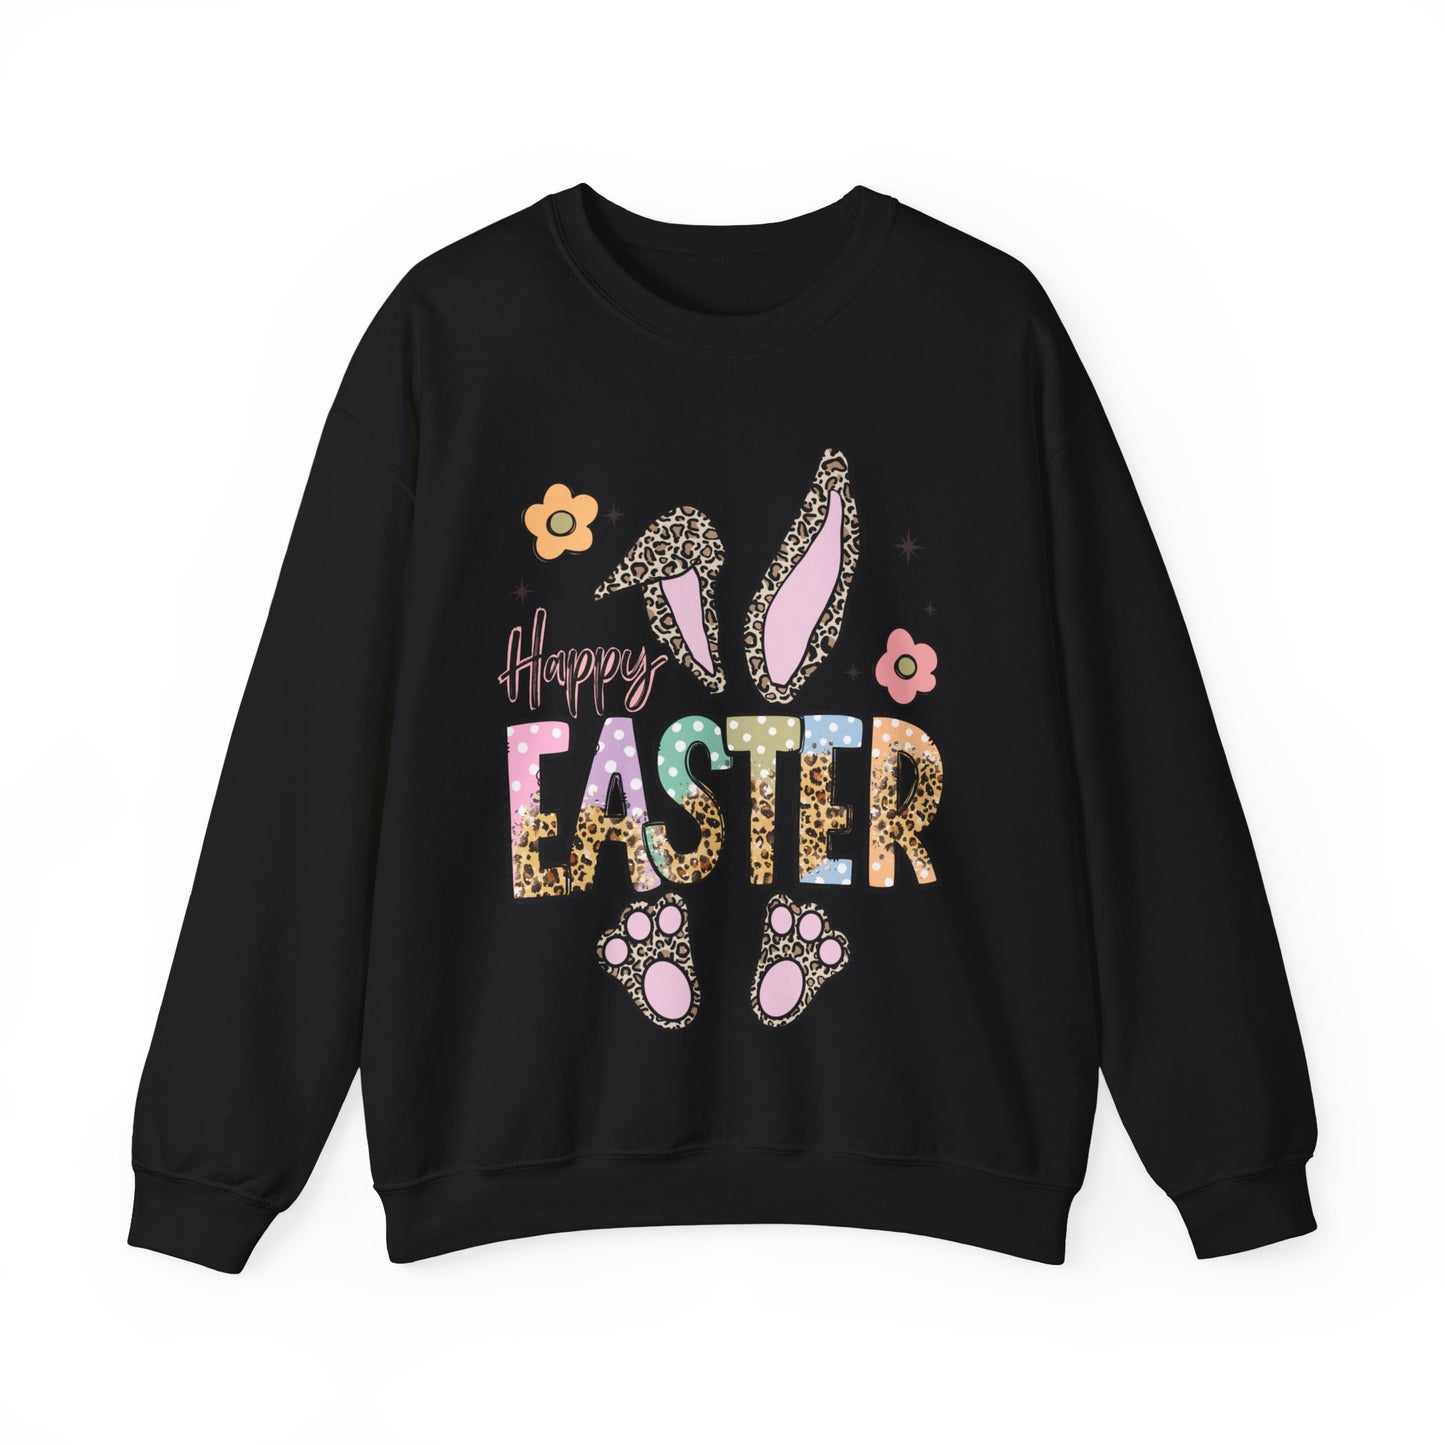 Happy Easter Women's Easter Sweatshirt